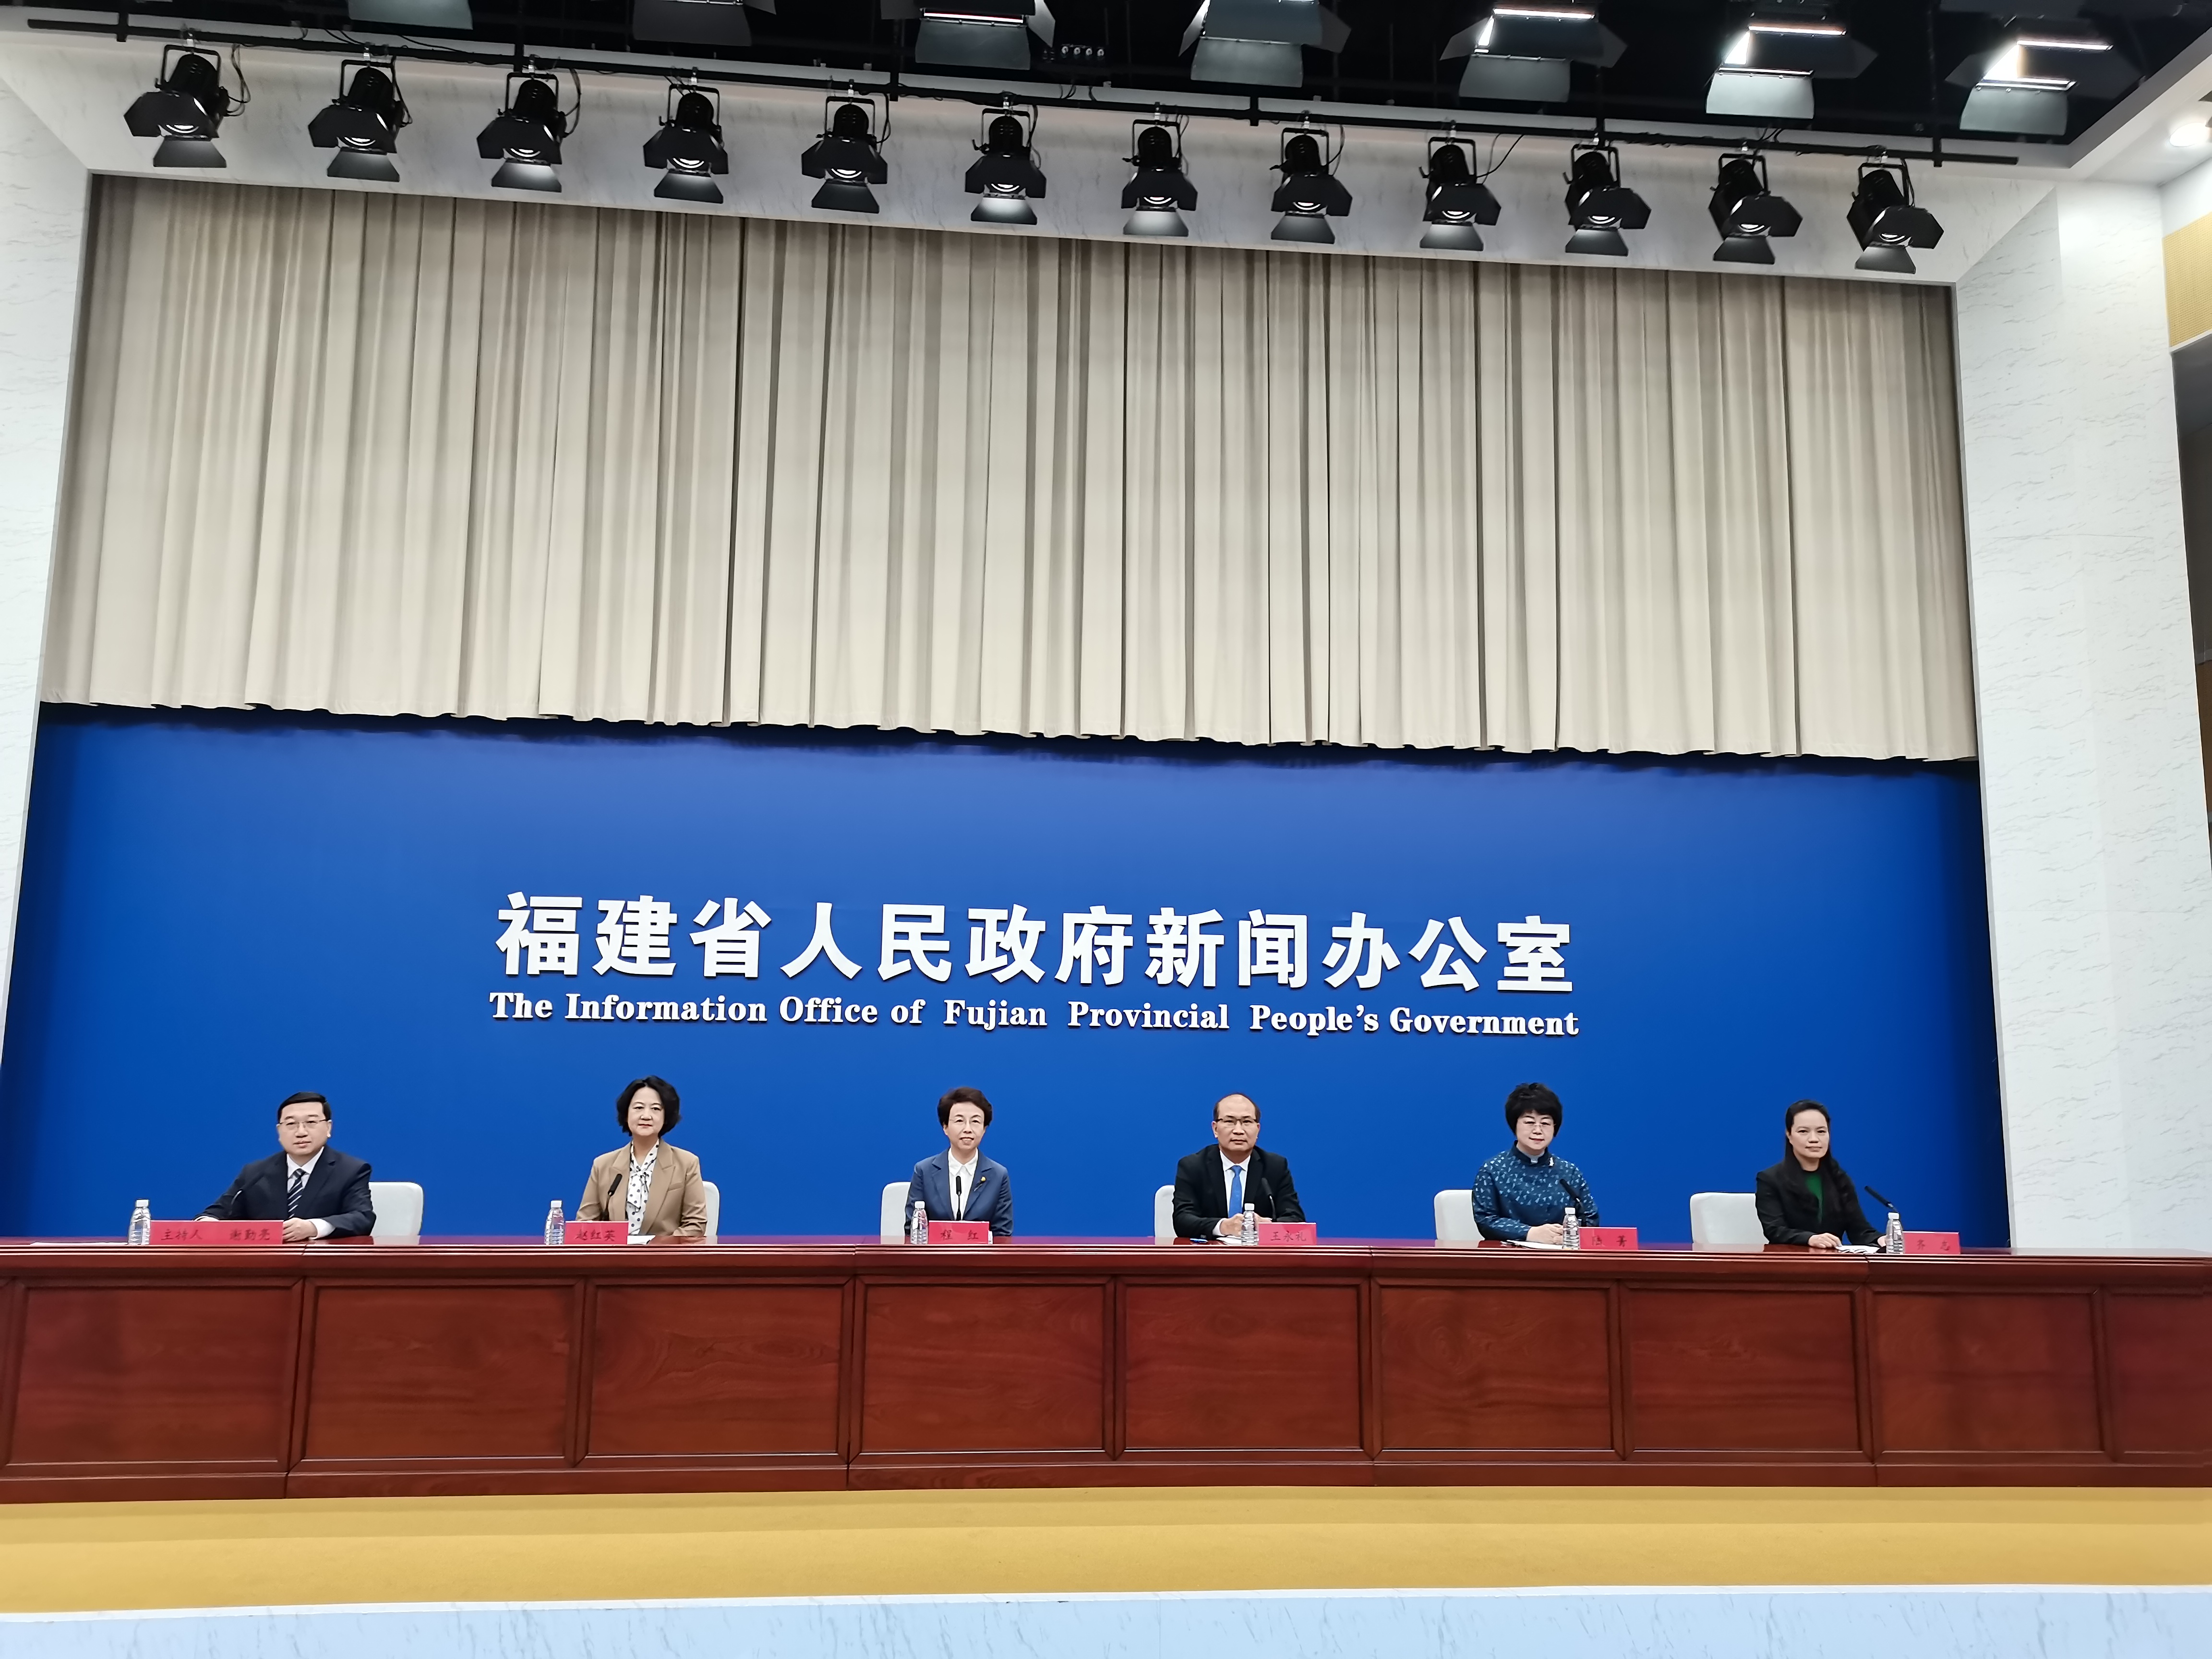 首屆中國僑智發展大會將於12月20日在僑務大省福建舉辦